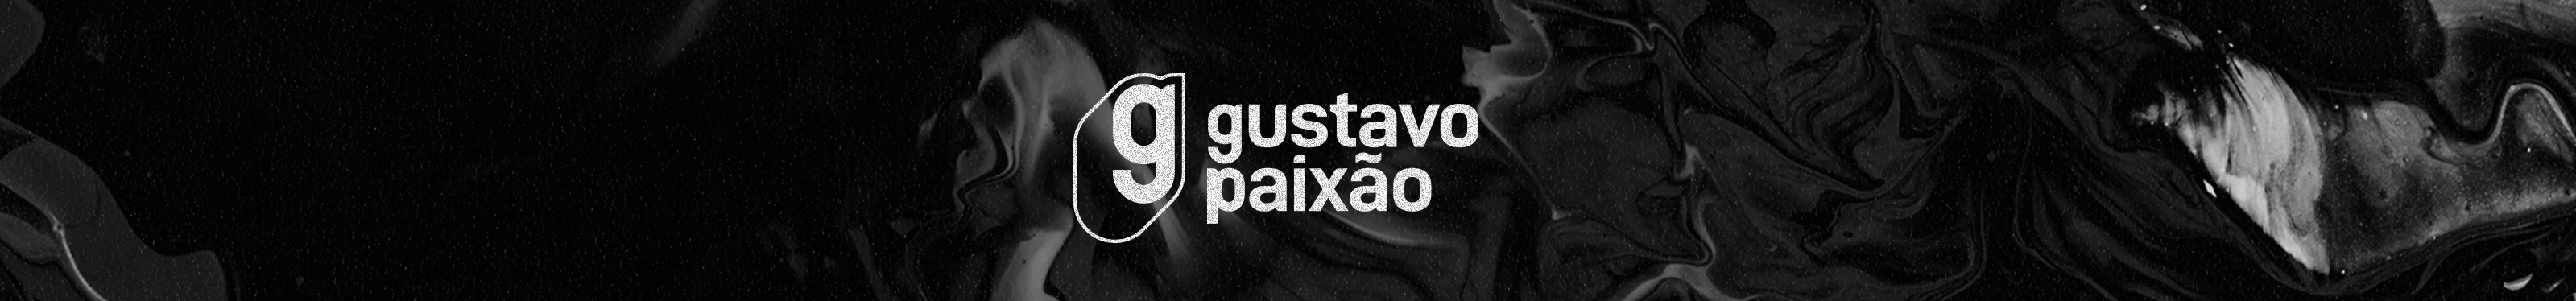 Gustavo Paixão 的個人檔案橫幅